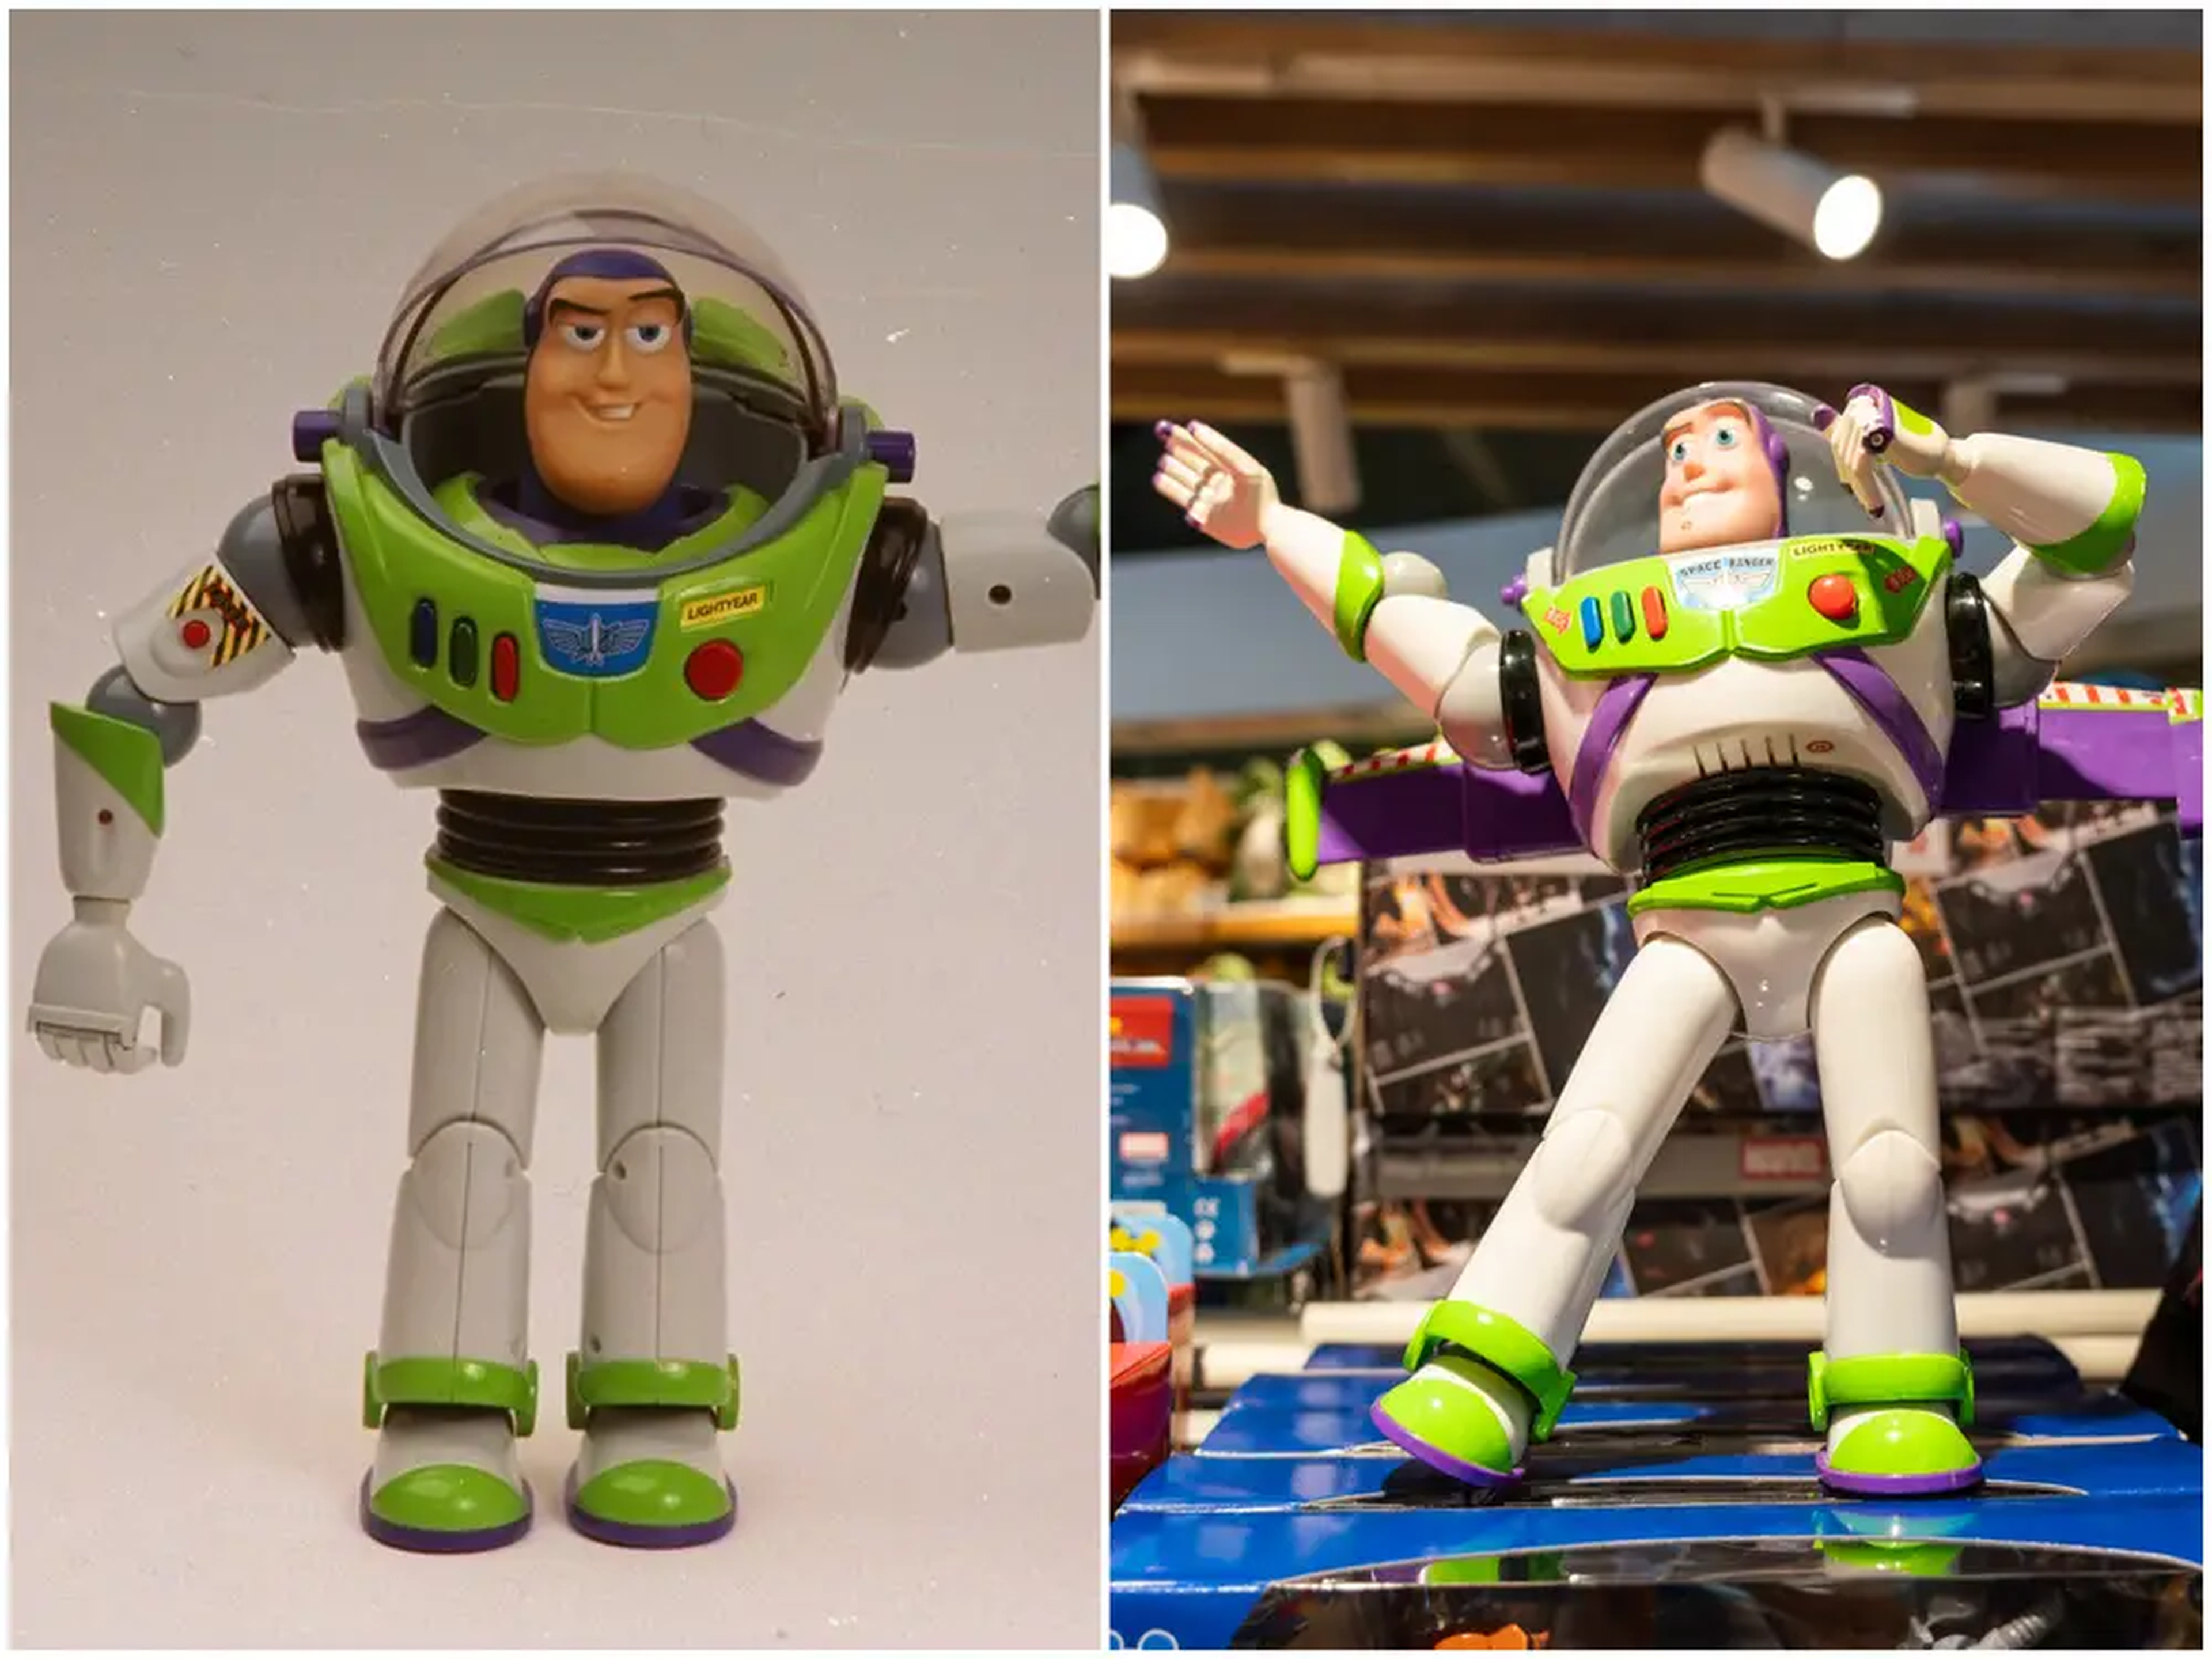 El diseño del juguete de Buzz Lightyear se ha mantenido prácticamente sin cambios desde que se lanzó por primera vez en 1995.